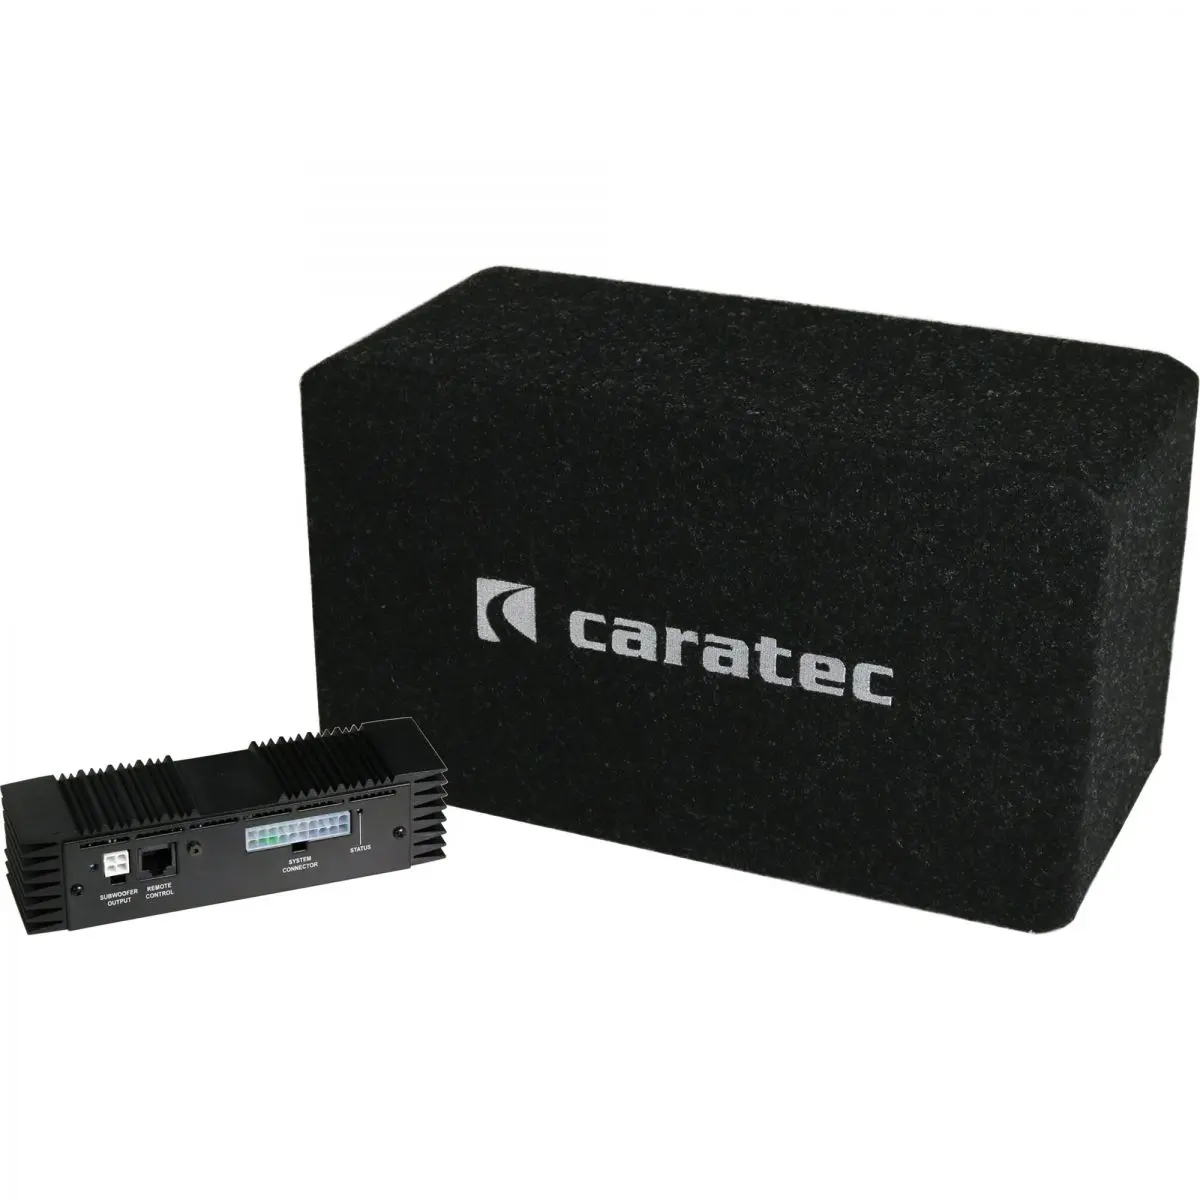 Sistem audio Caratec CAS208D pentru Fiat Ducato din 2006/07 cu pregatire pentru radio, - 6 canale